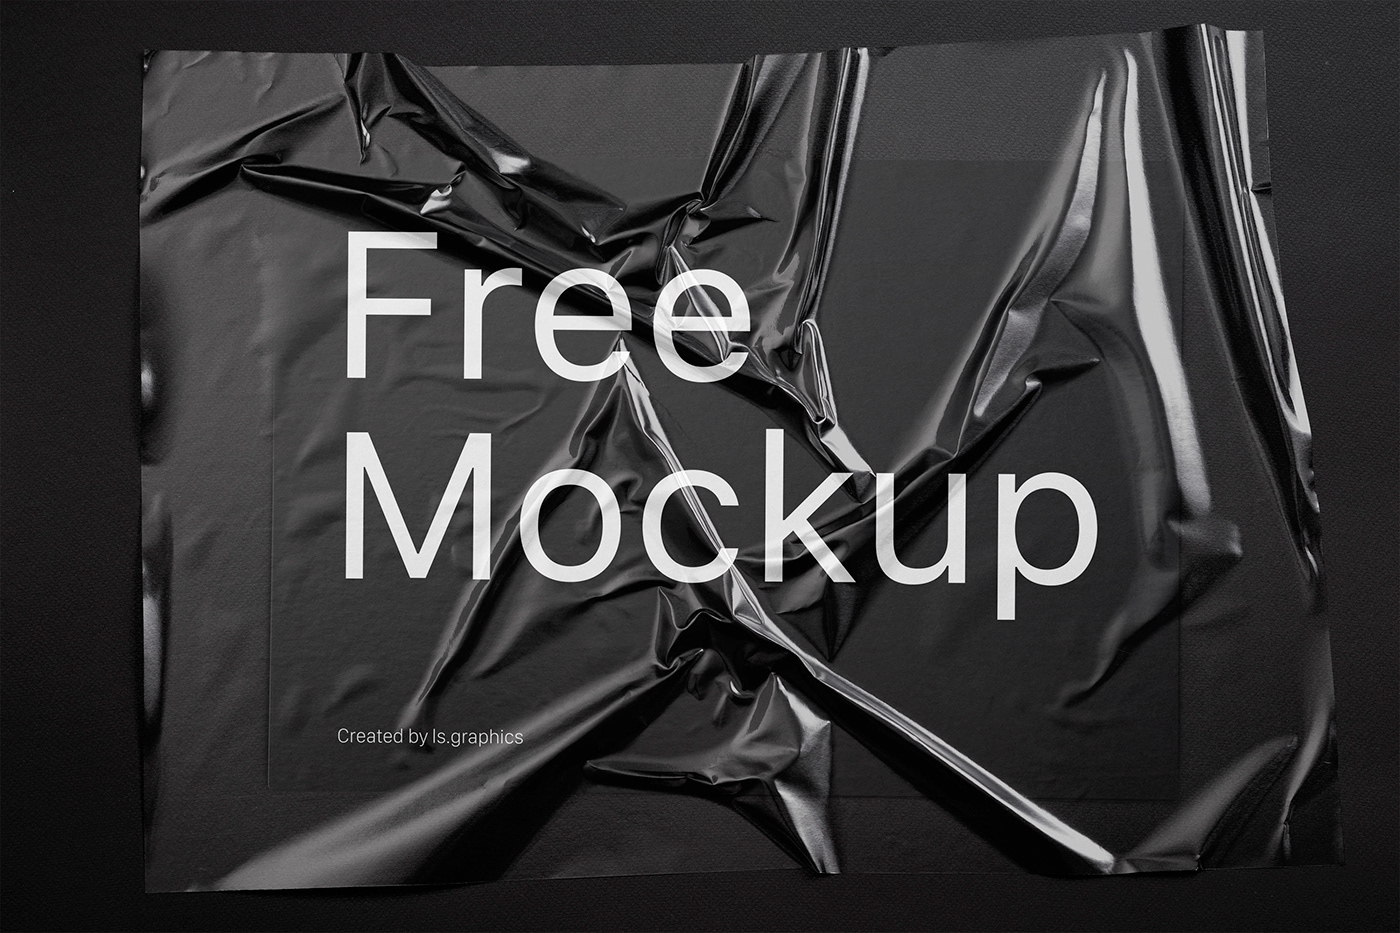 Mockup free freebie download paper Wrinkles wrinkled